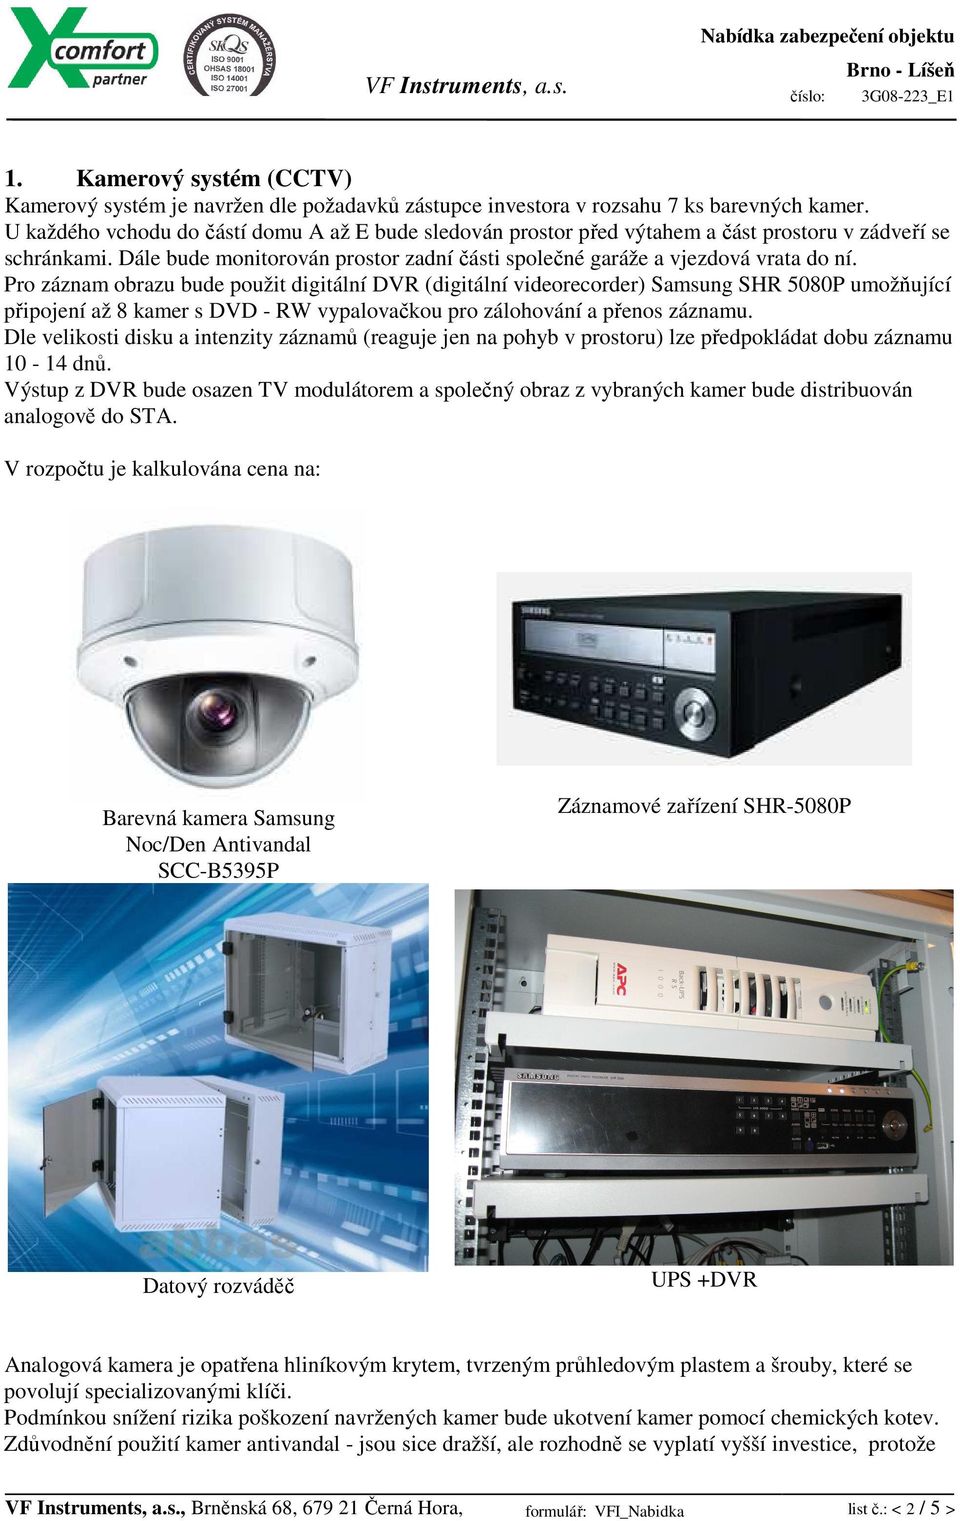 Pro záznam obrazu bude použit digitální DVR (digitální videorecorder) Samsung SHR 5080P umožňující připojení až 8 kamer s DVD - RW vypalovačkou pro zálohování a přenos záznamu.